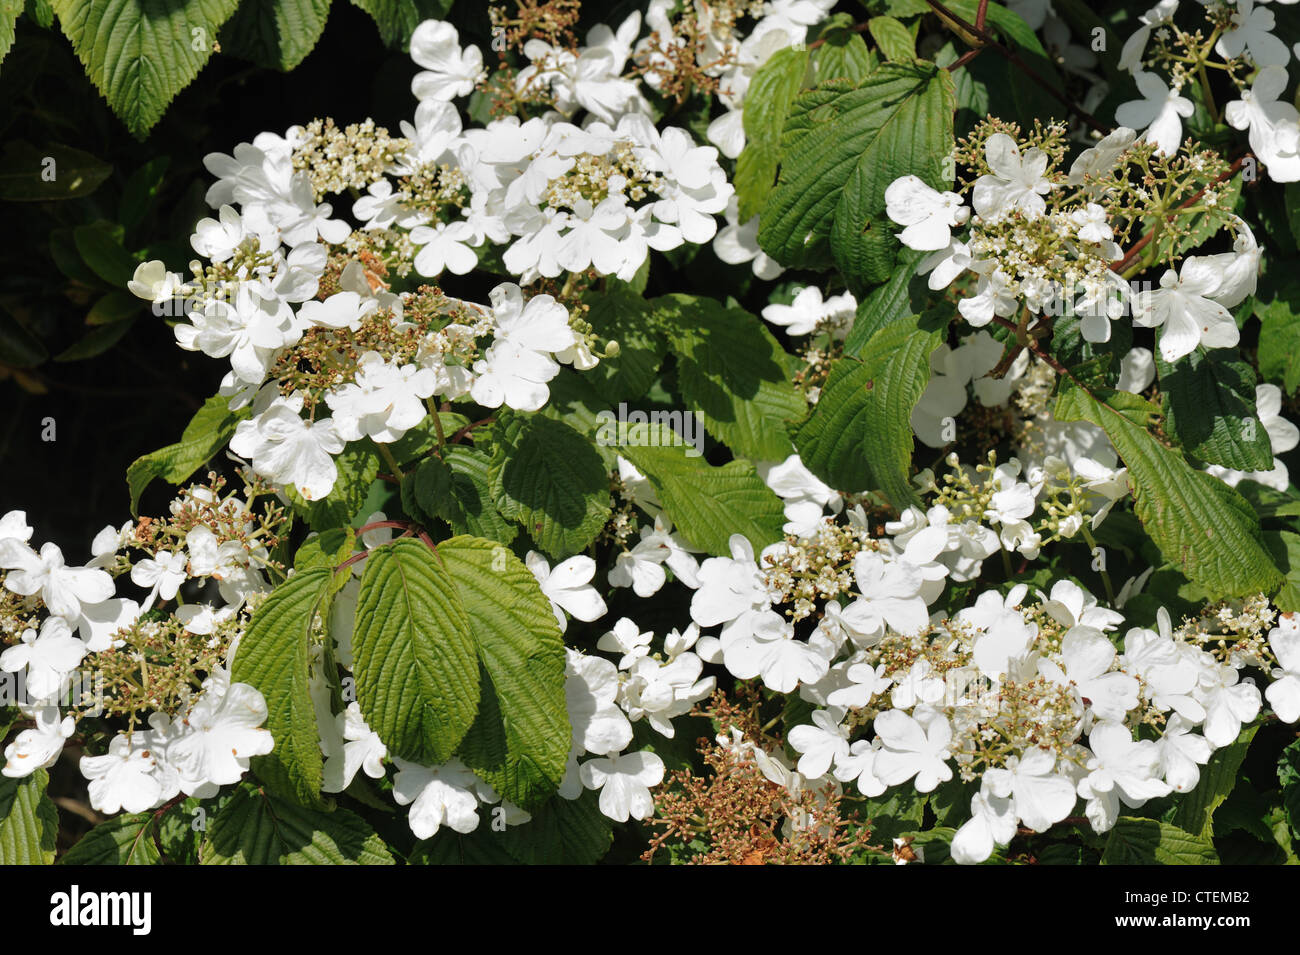 Boule de neige Viburnum plicatum japonais bush fleurs blanches sur les arbustes d'ornement Banque D'Images